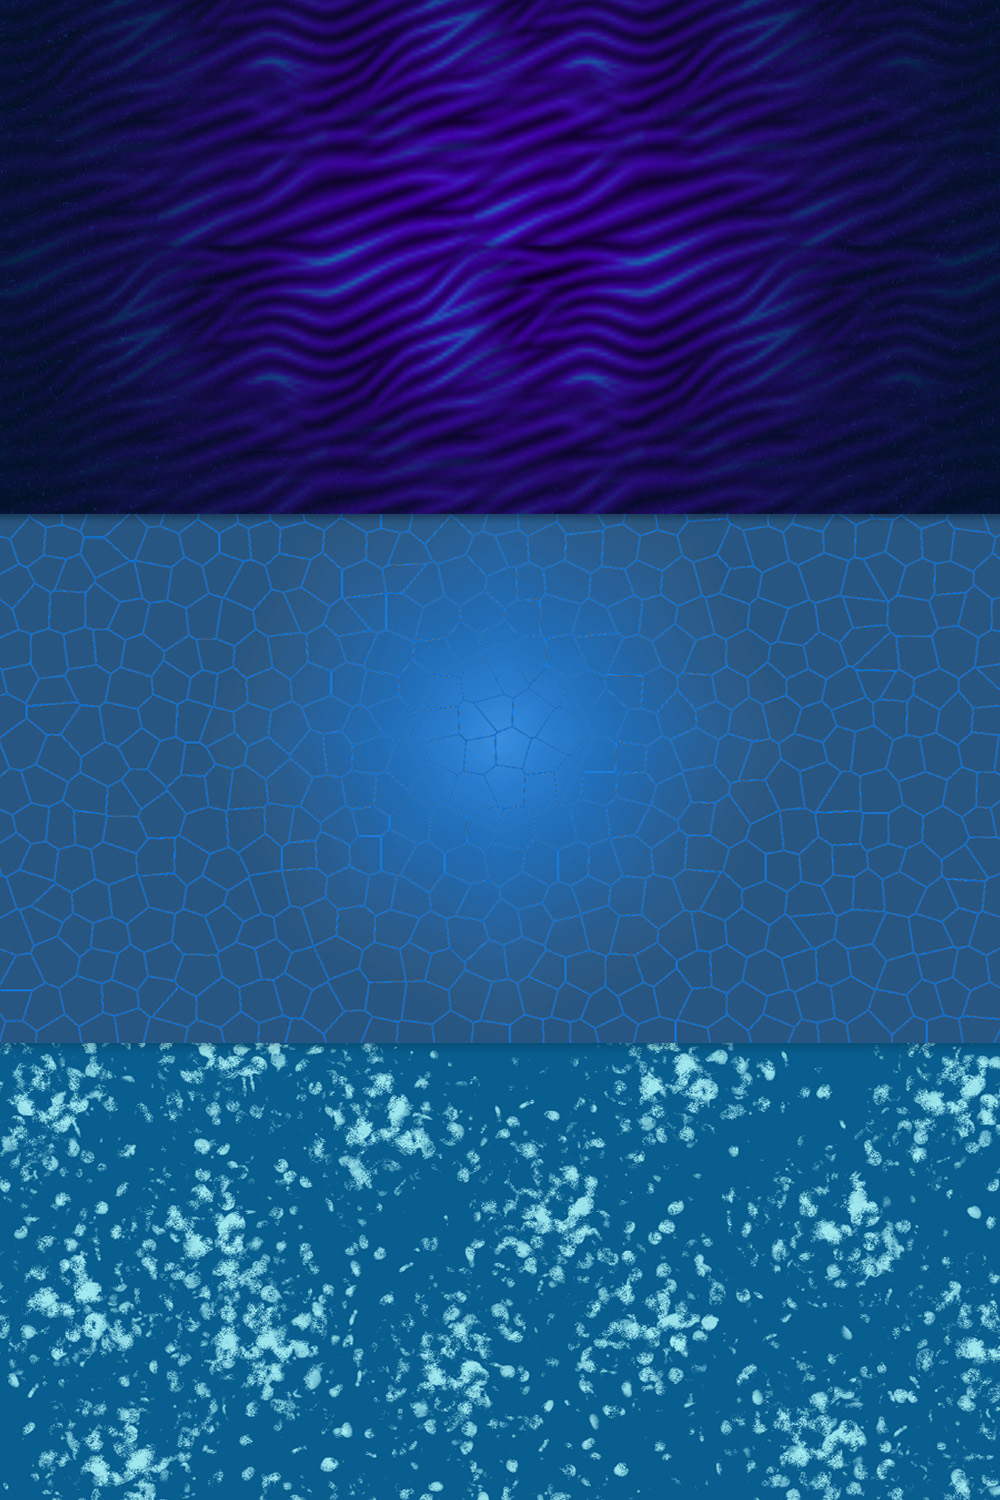 Blue Coloured Backgrounds Design Bundle pinterest image.